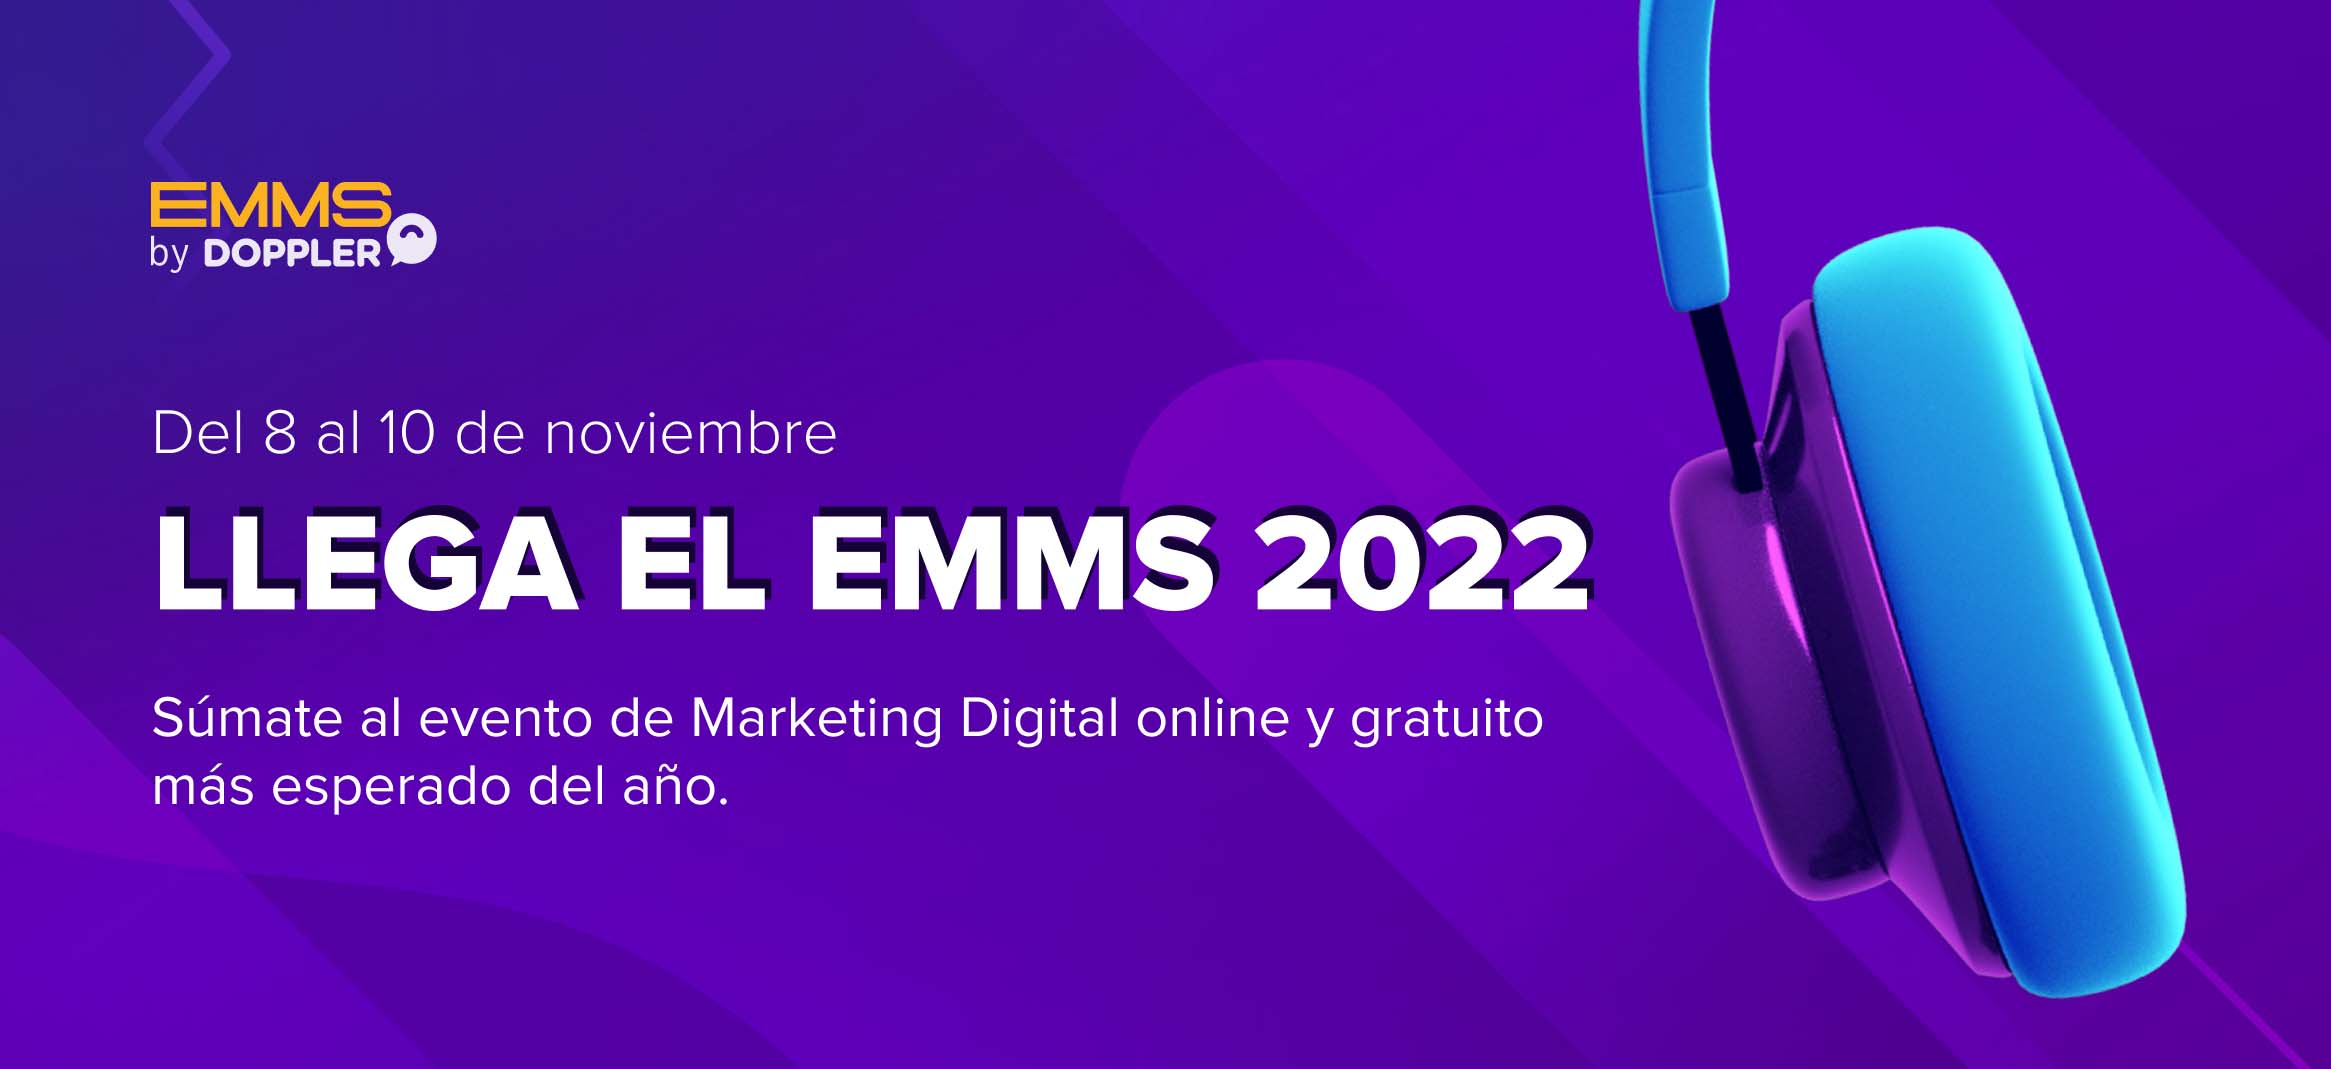 EMMS 2022 regresa el próximo 8 de Octubre